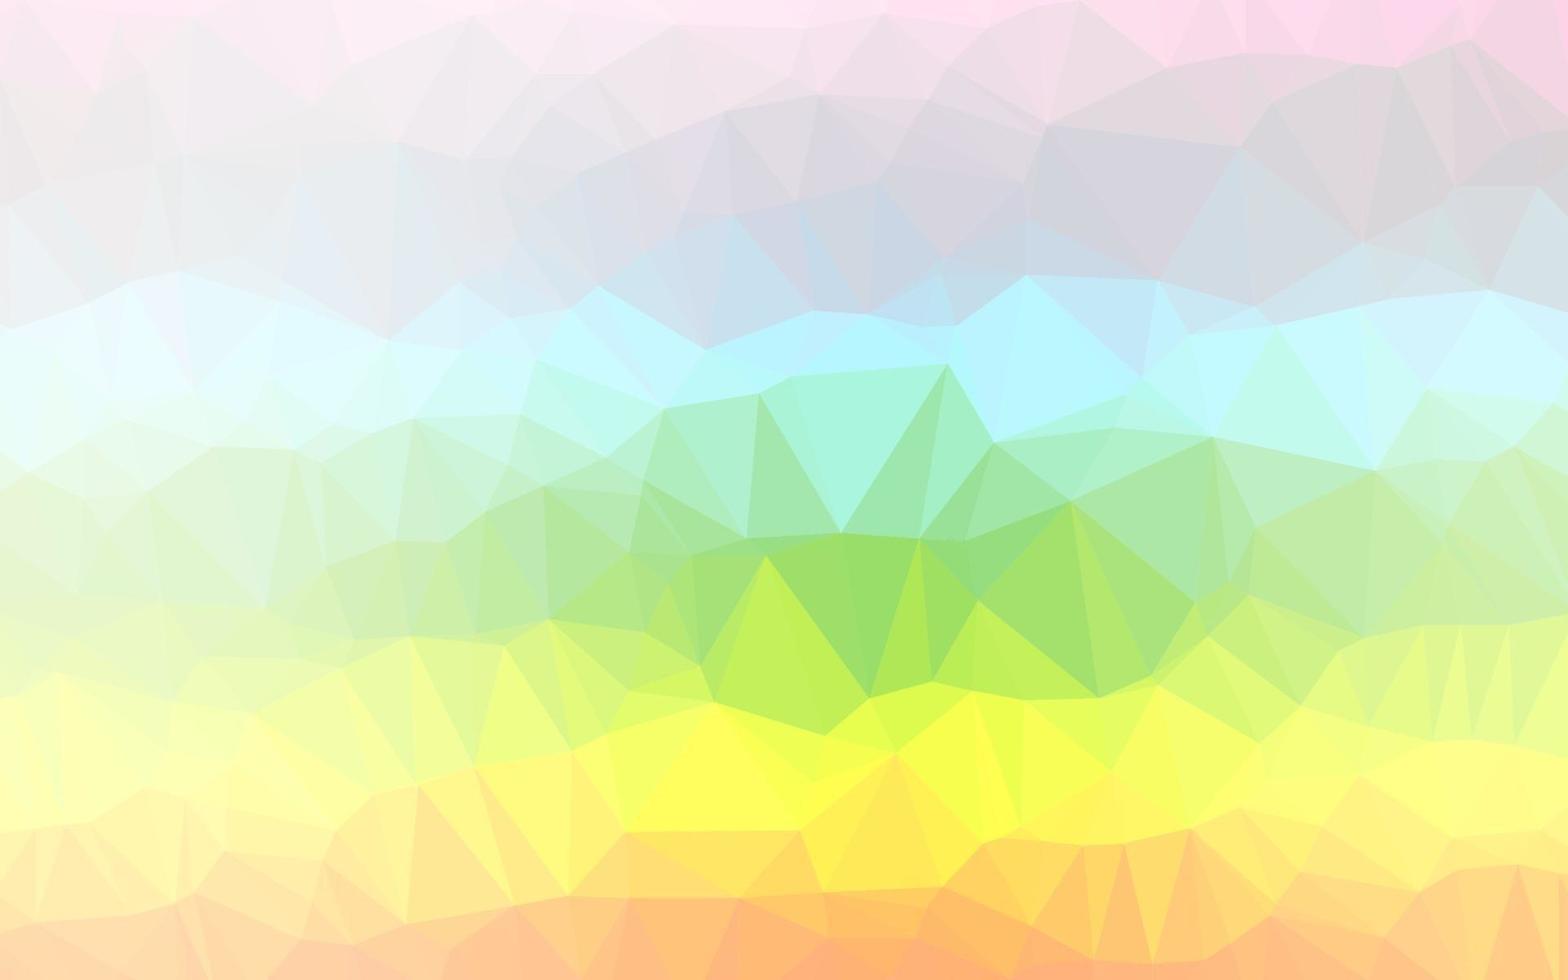 luz multicolor, padrão de mosaico abstrato de vetor de arco-íris.